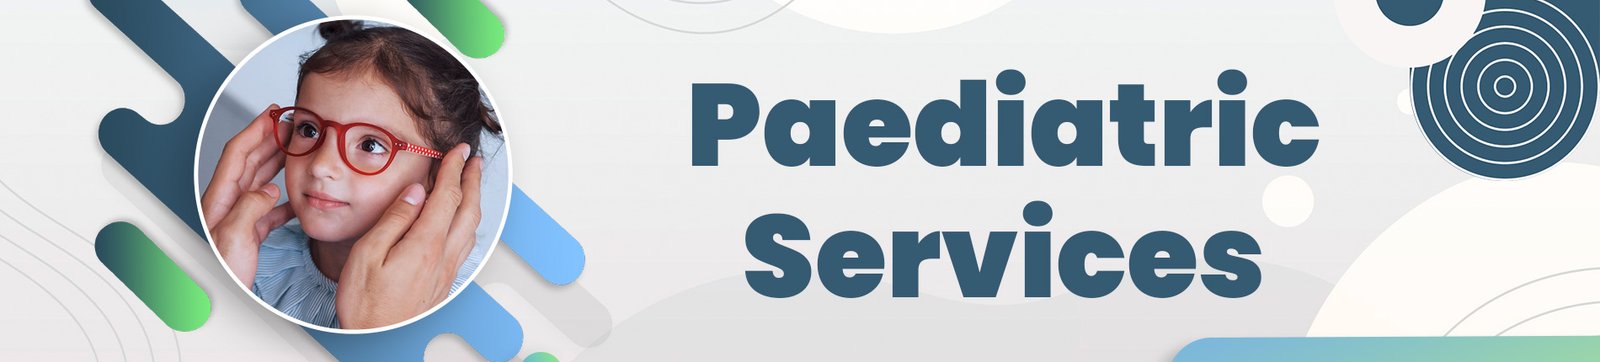 paediatric-services